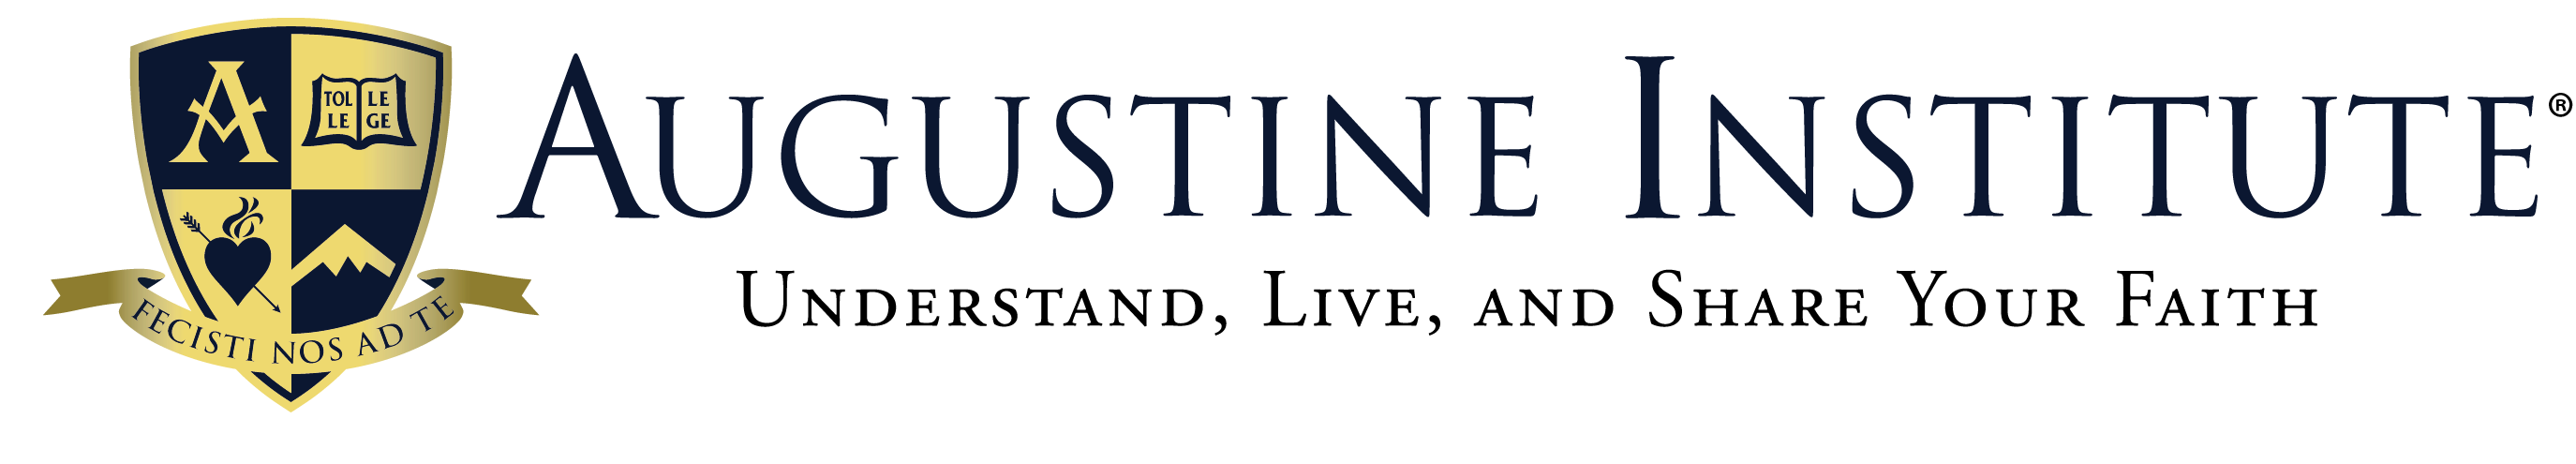 Augustine Institute logo